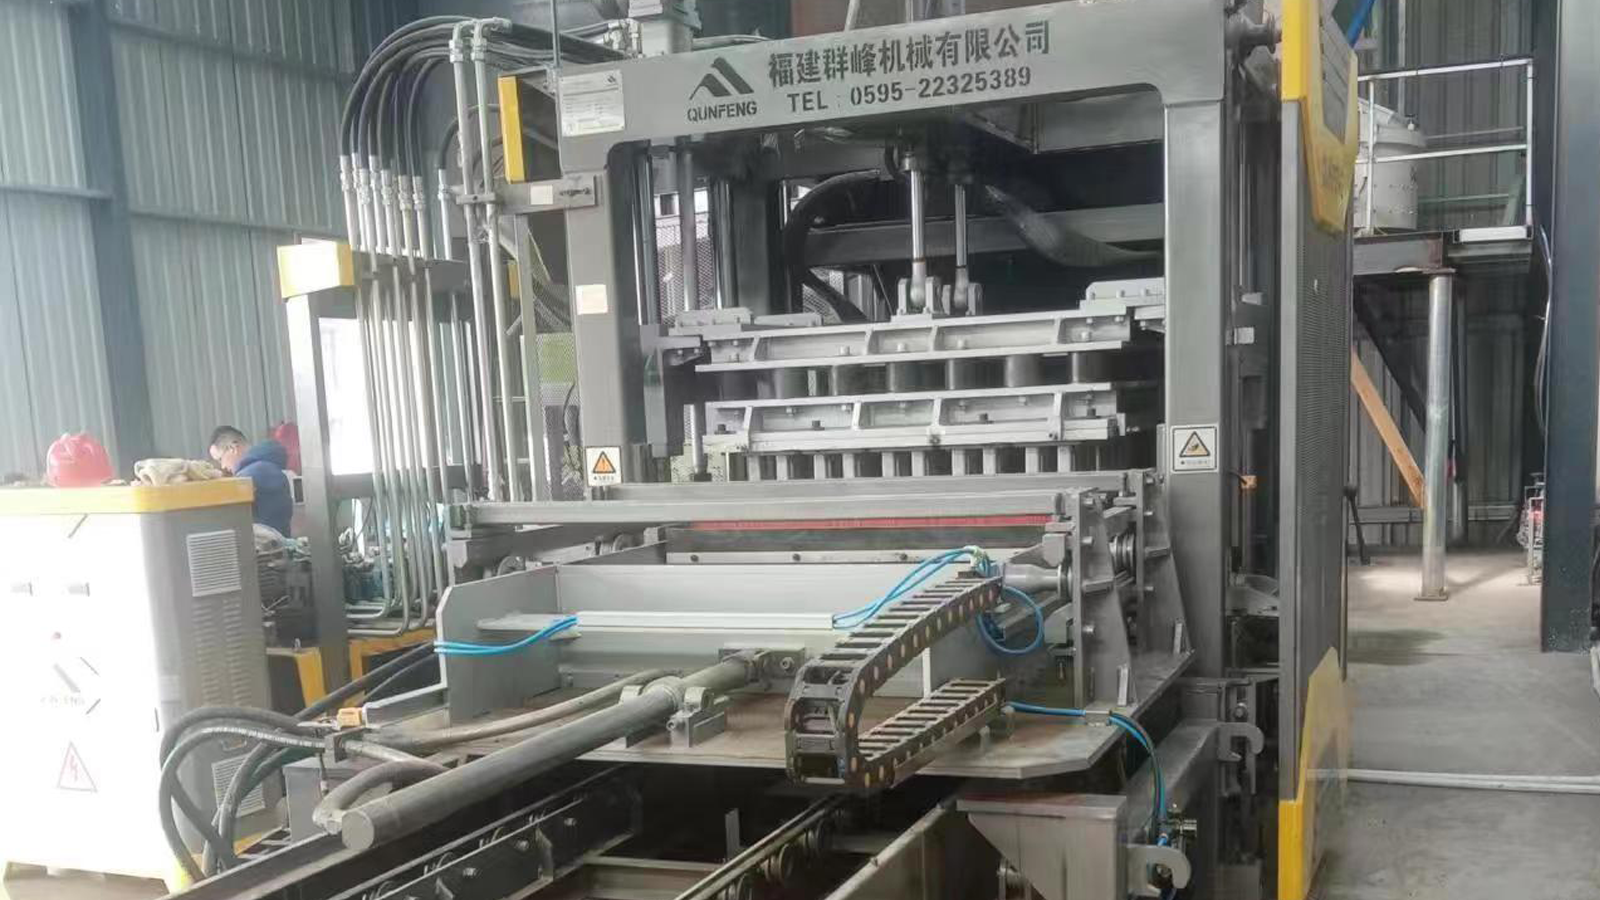 The Hazardous Waste Brick Manufacturing And Heavy Metal Recycling Project in Zhangjiagang, Jiangsu, China.